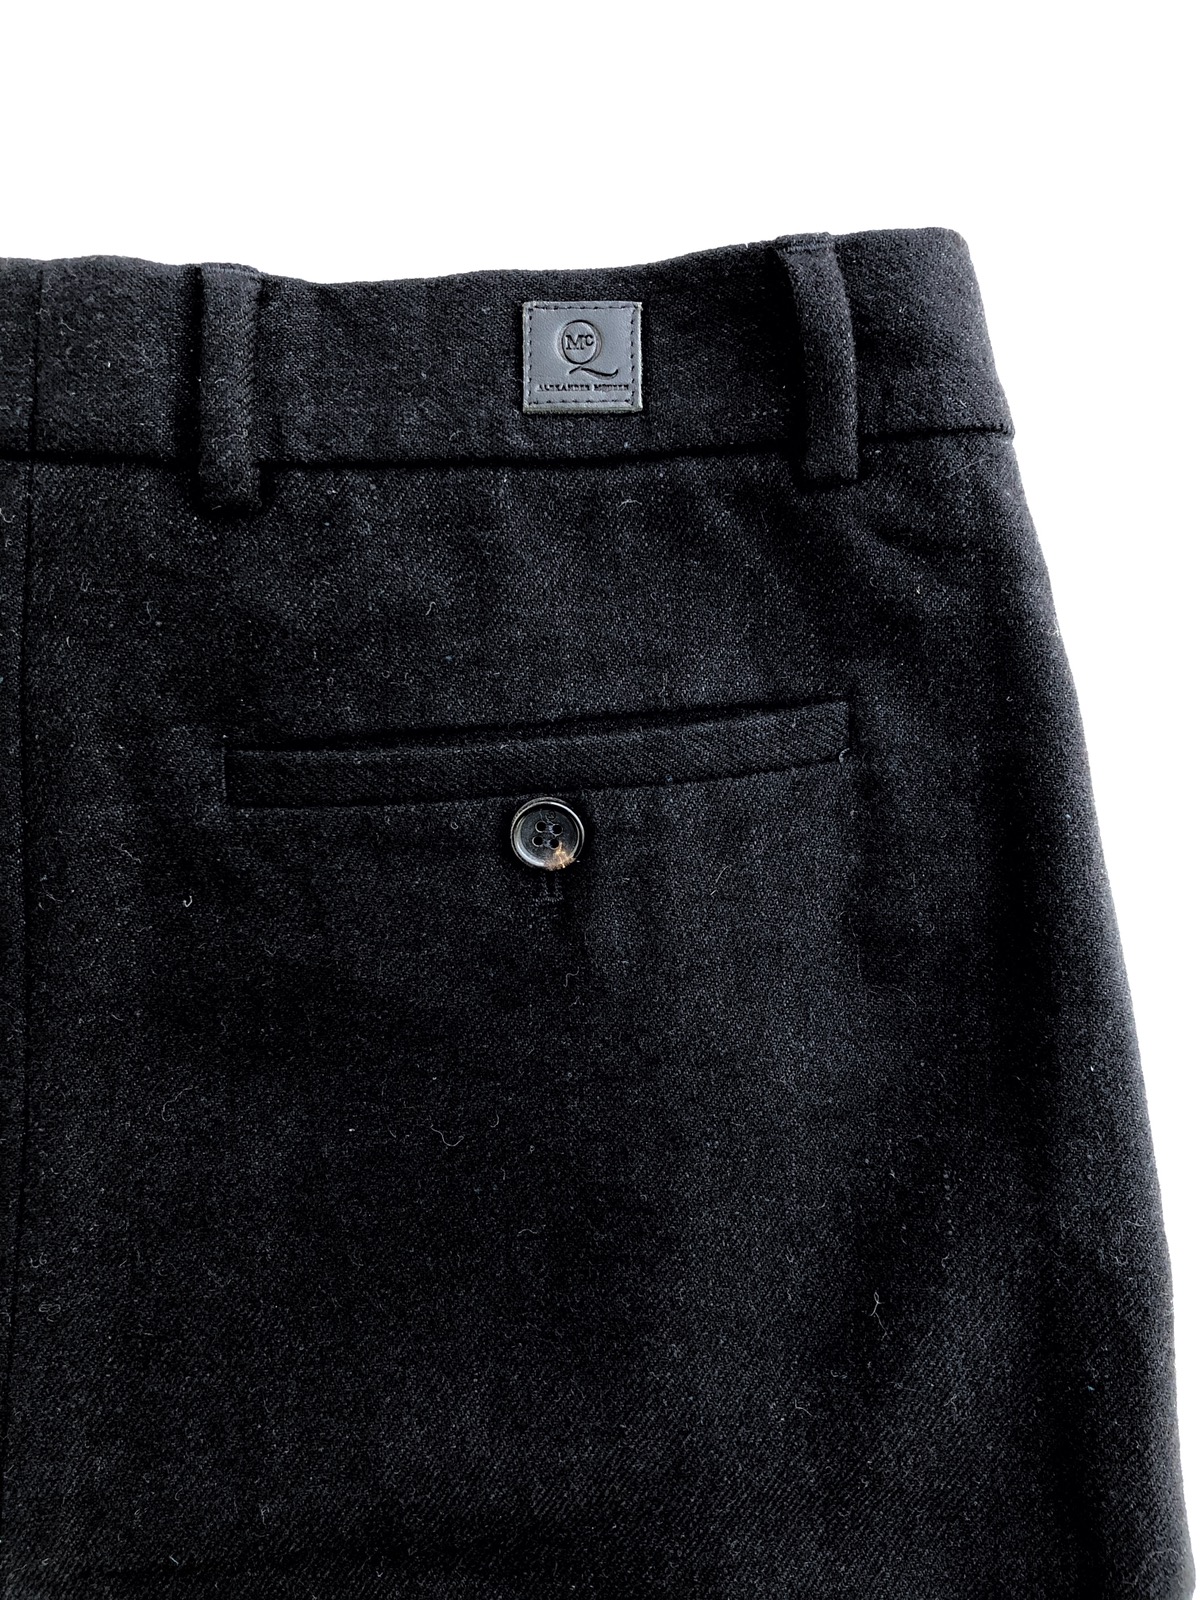 Wool Pants - 7